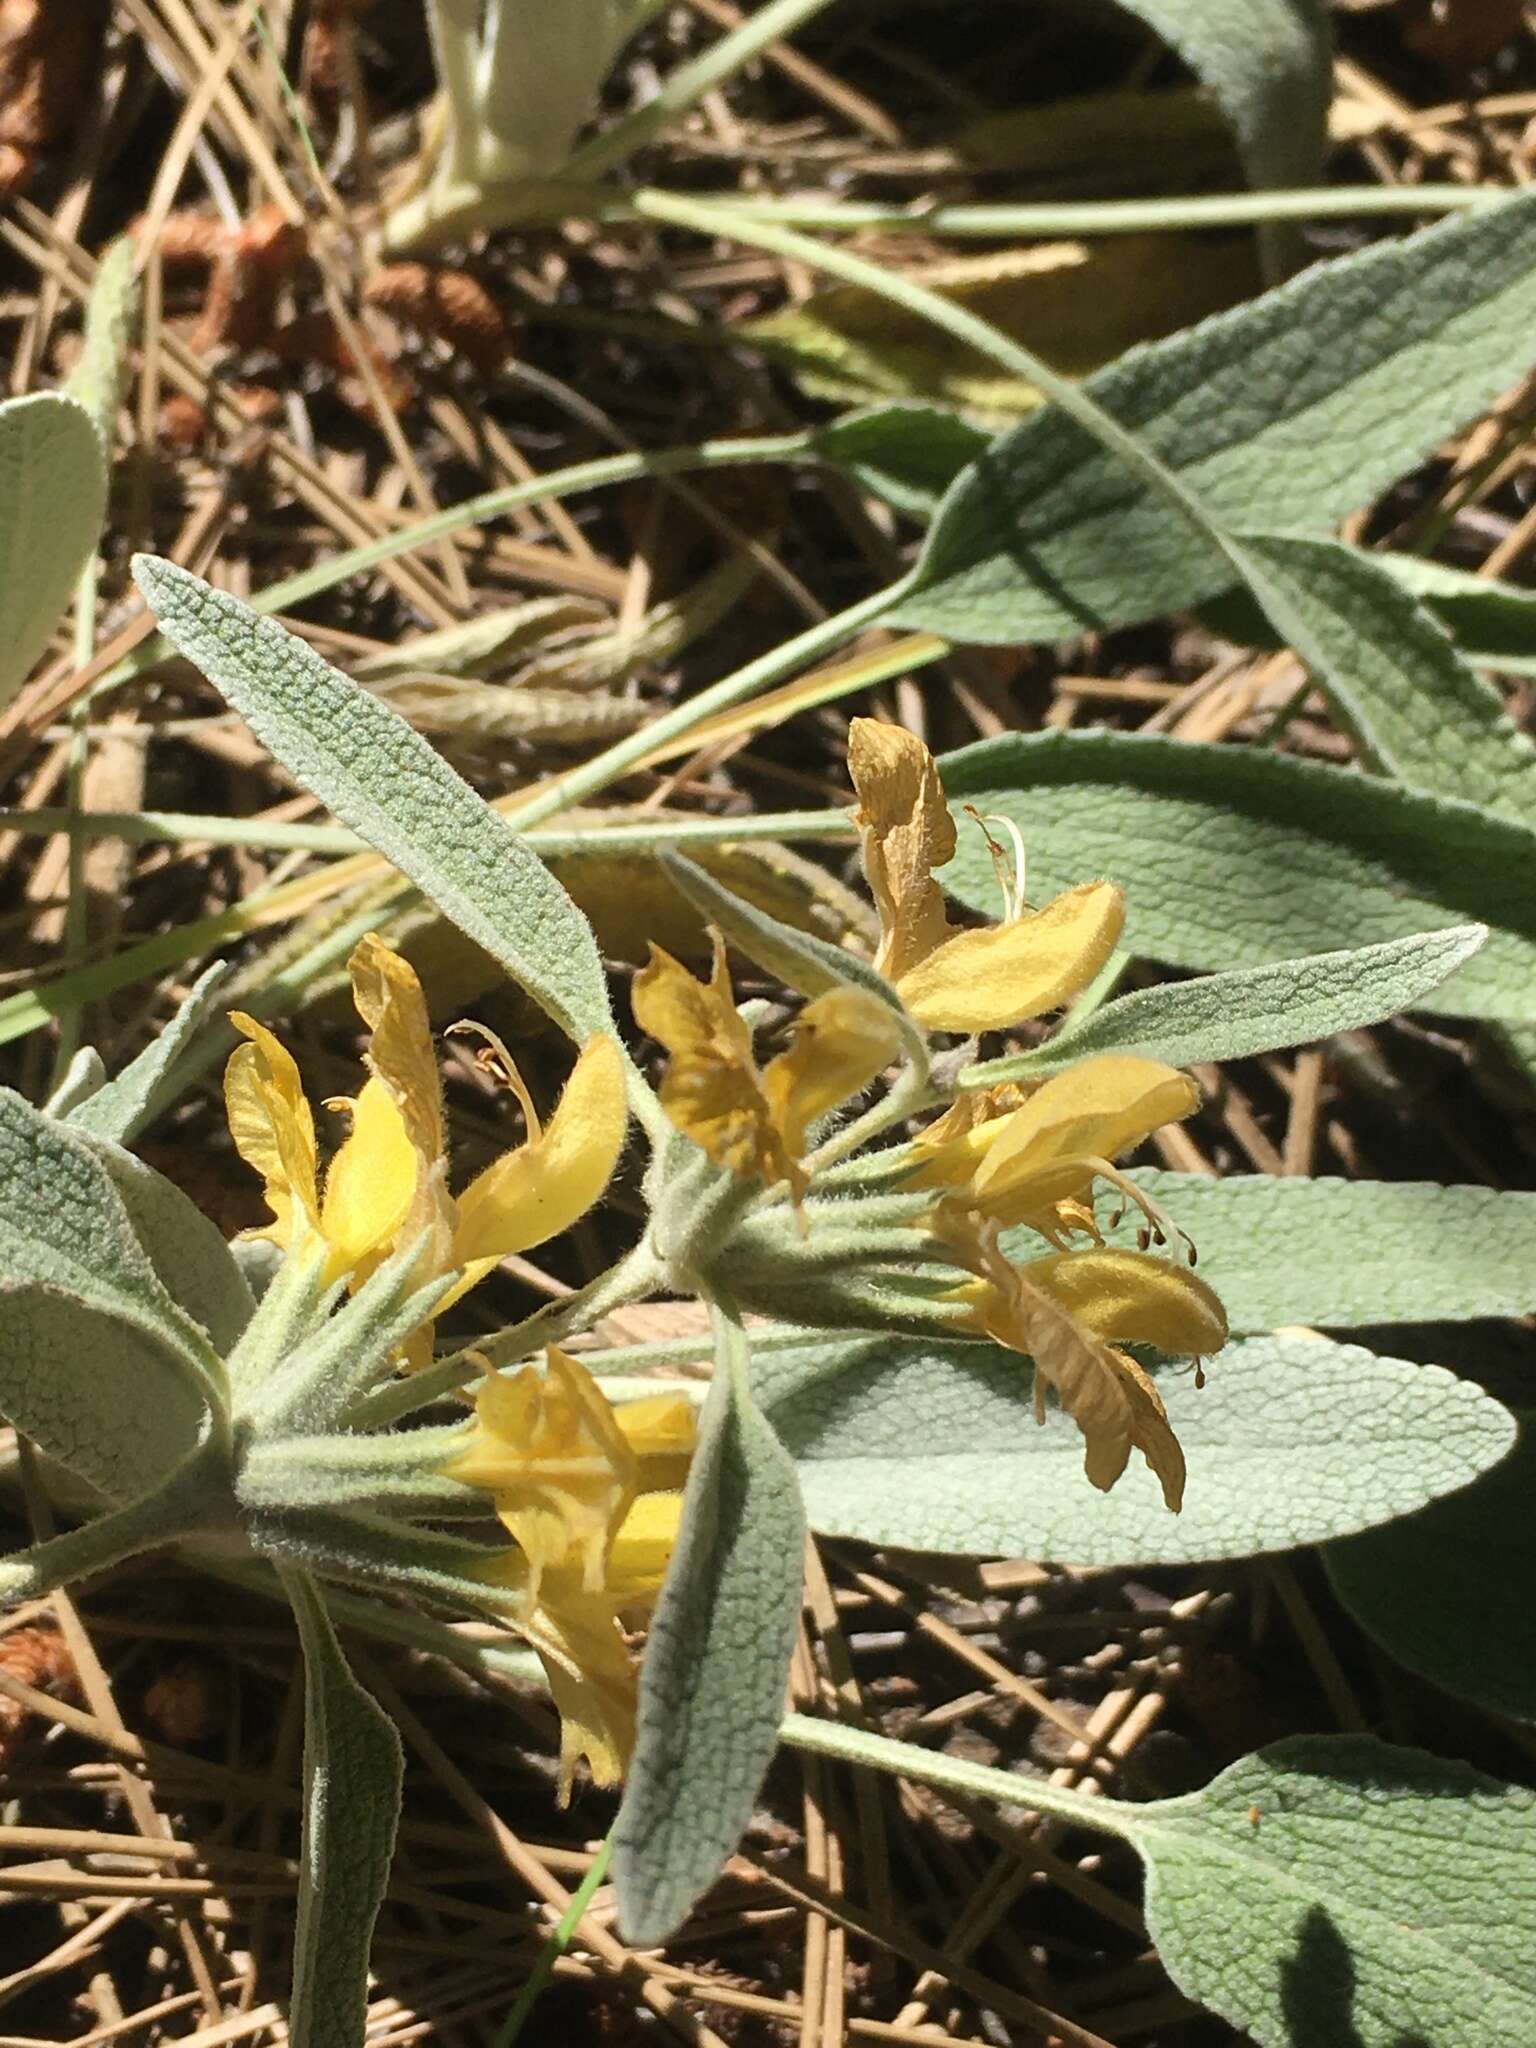 Image of Phlomis armeniaca Willd.